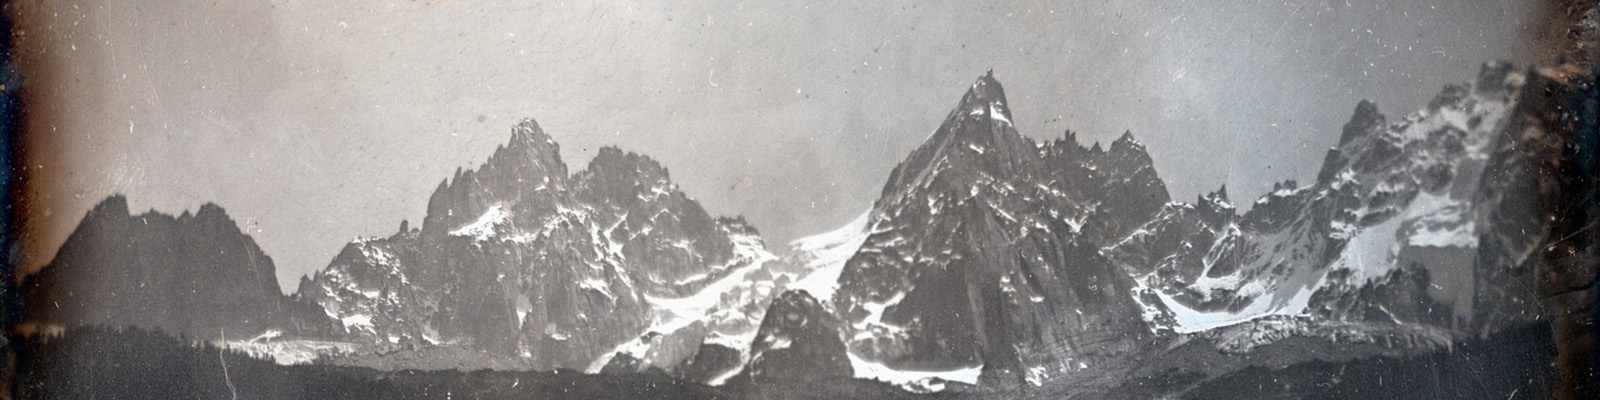 Les Aiguilles, Chamonix - Daguerreotype